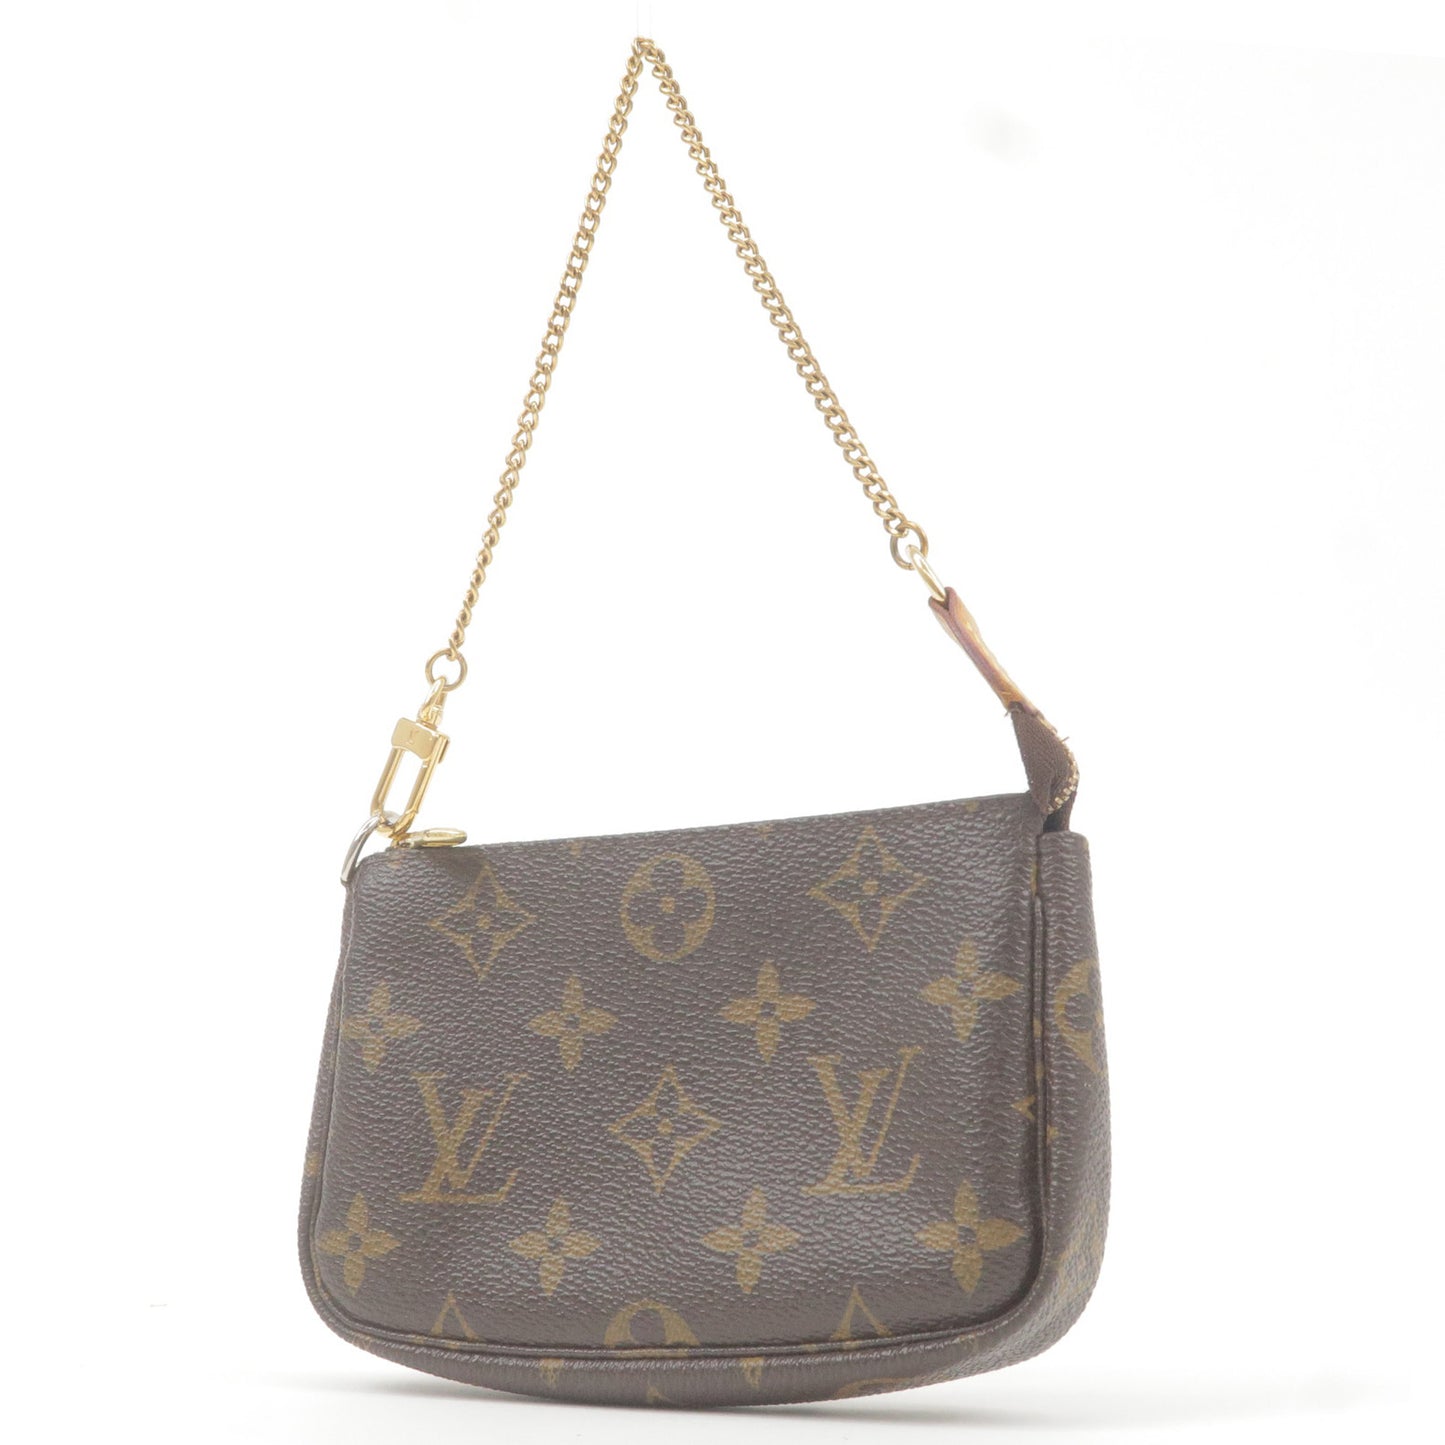 Vuitton Monogram Mini Felicie Multi Bag